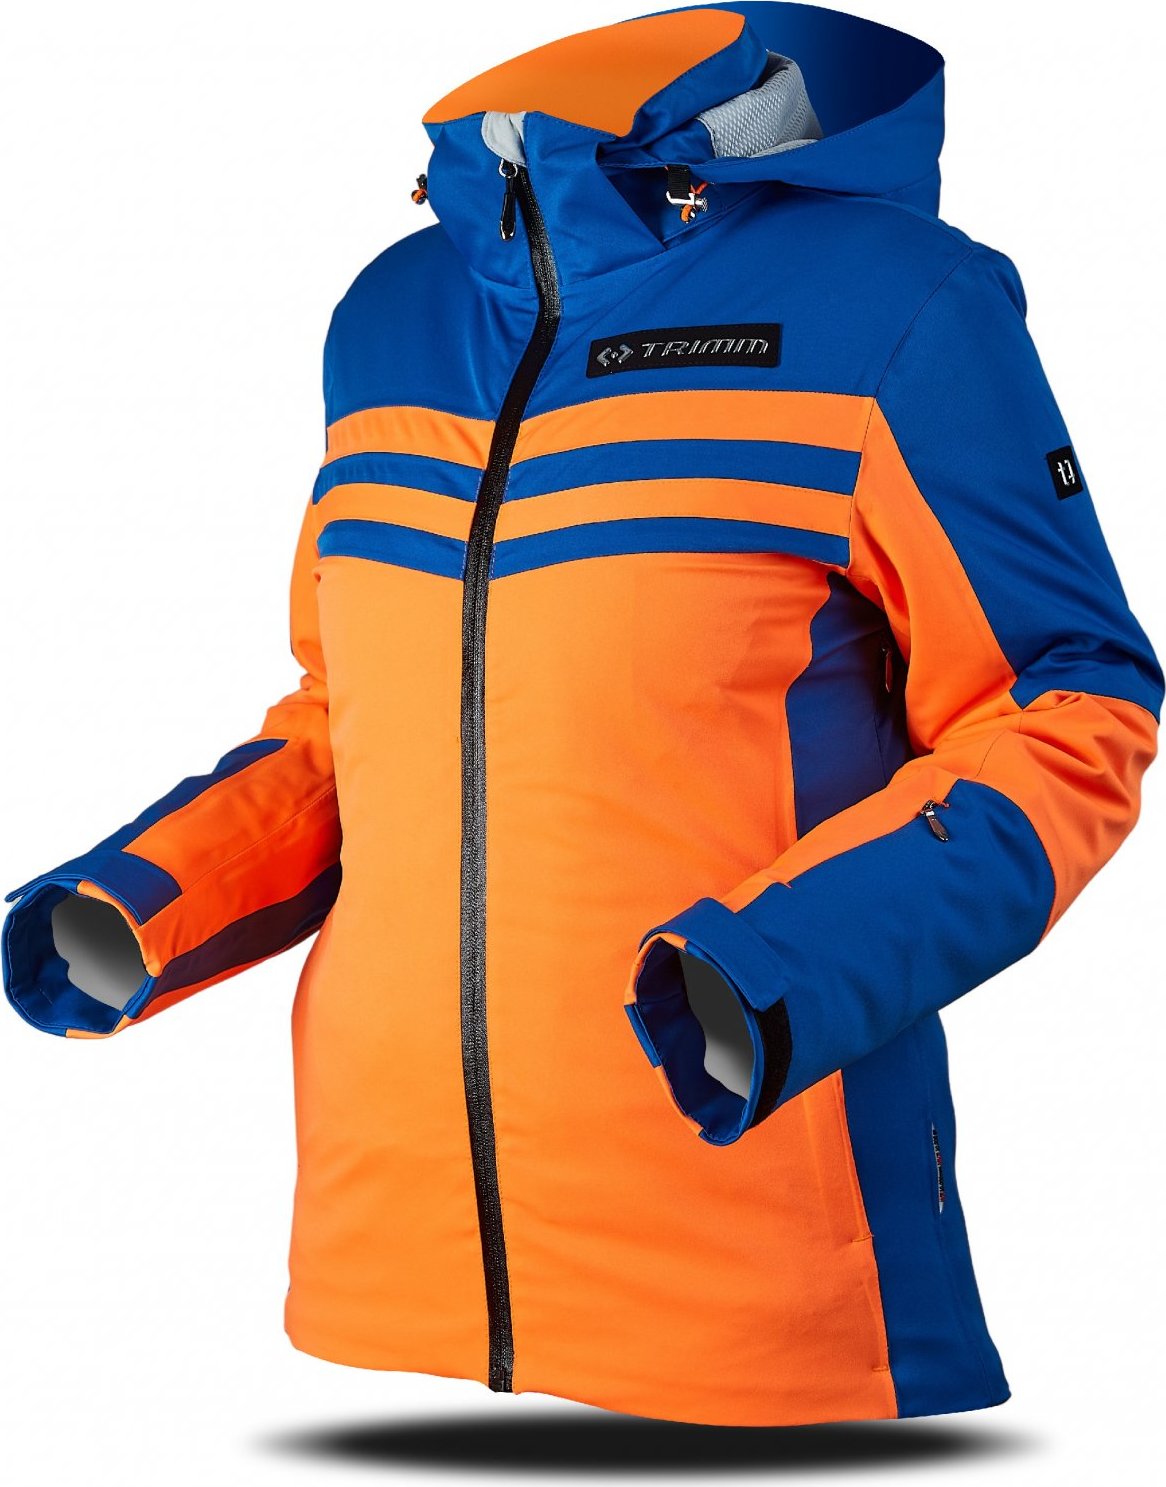 Dámská lyžařská bunda TRIMM Ilusion oranžová/modrá Velikost: M, Barva: signal orange/jeans blue